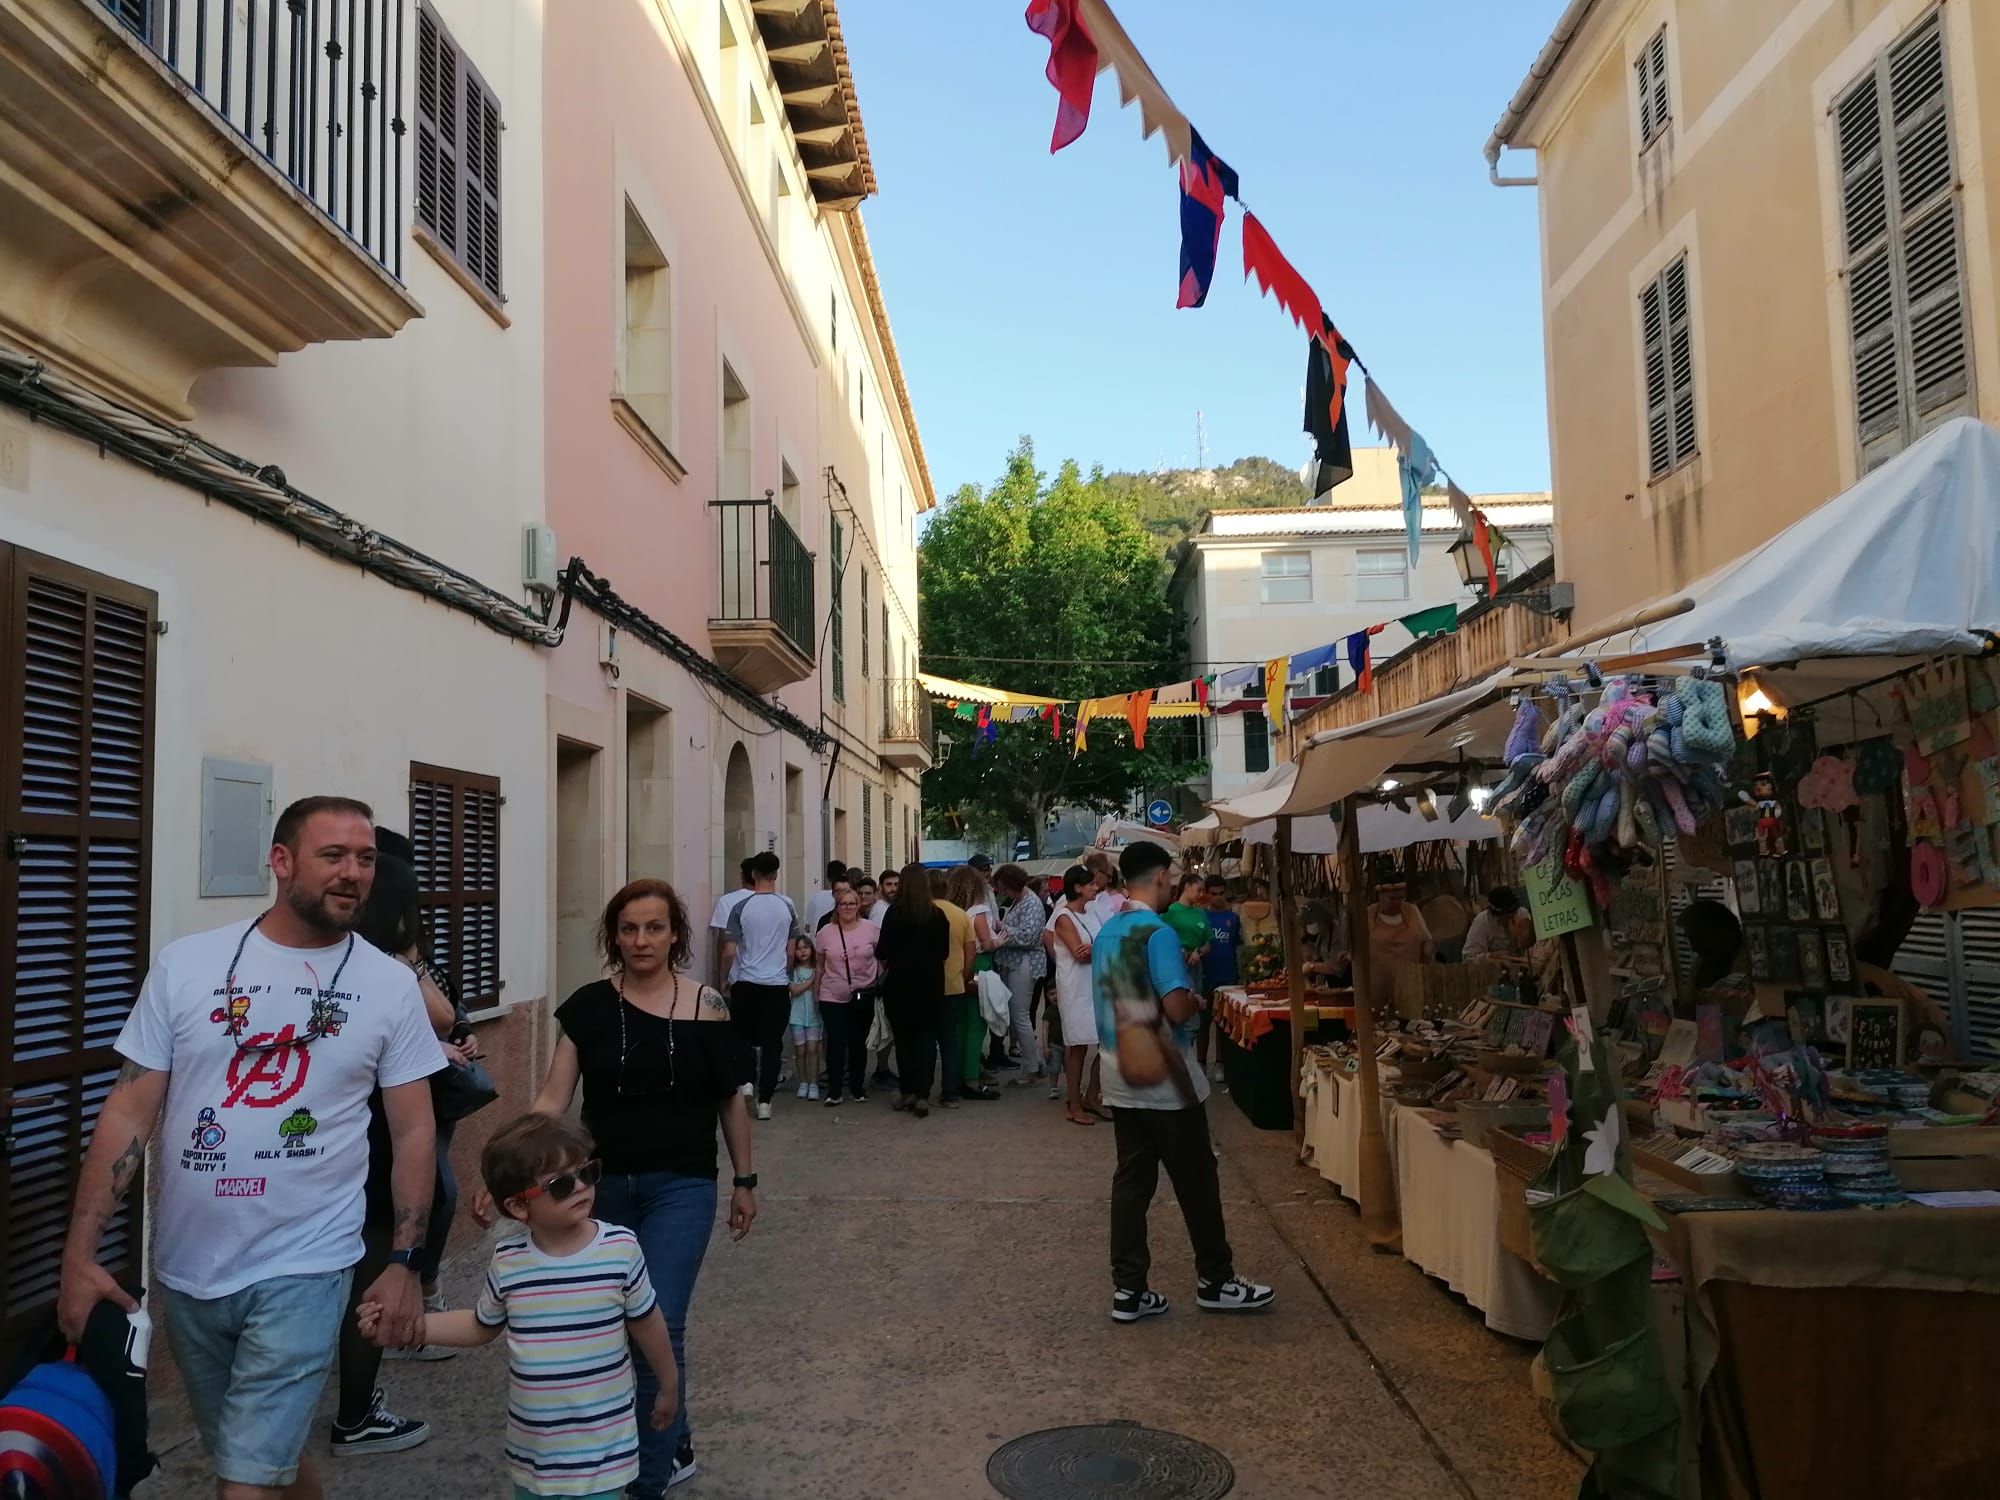 Die besten Bilder vom Mittelaltermarkt in Capdepera auf Mallorca